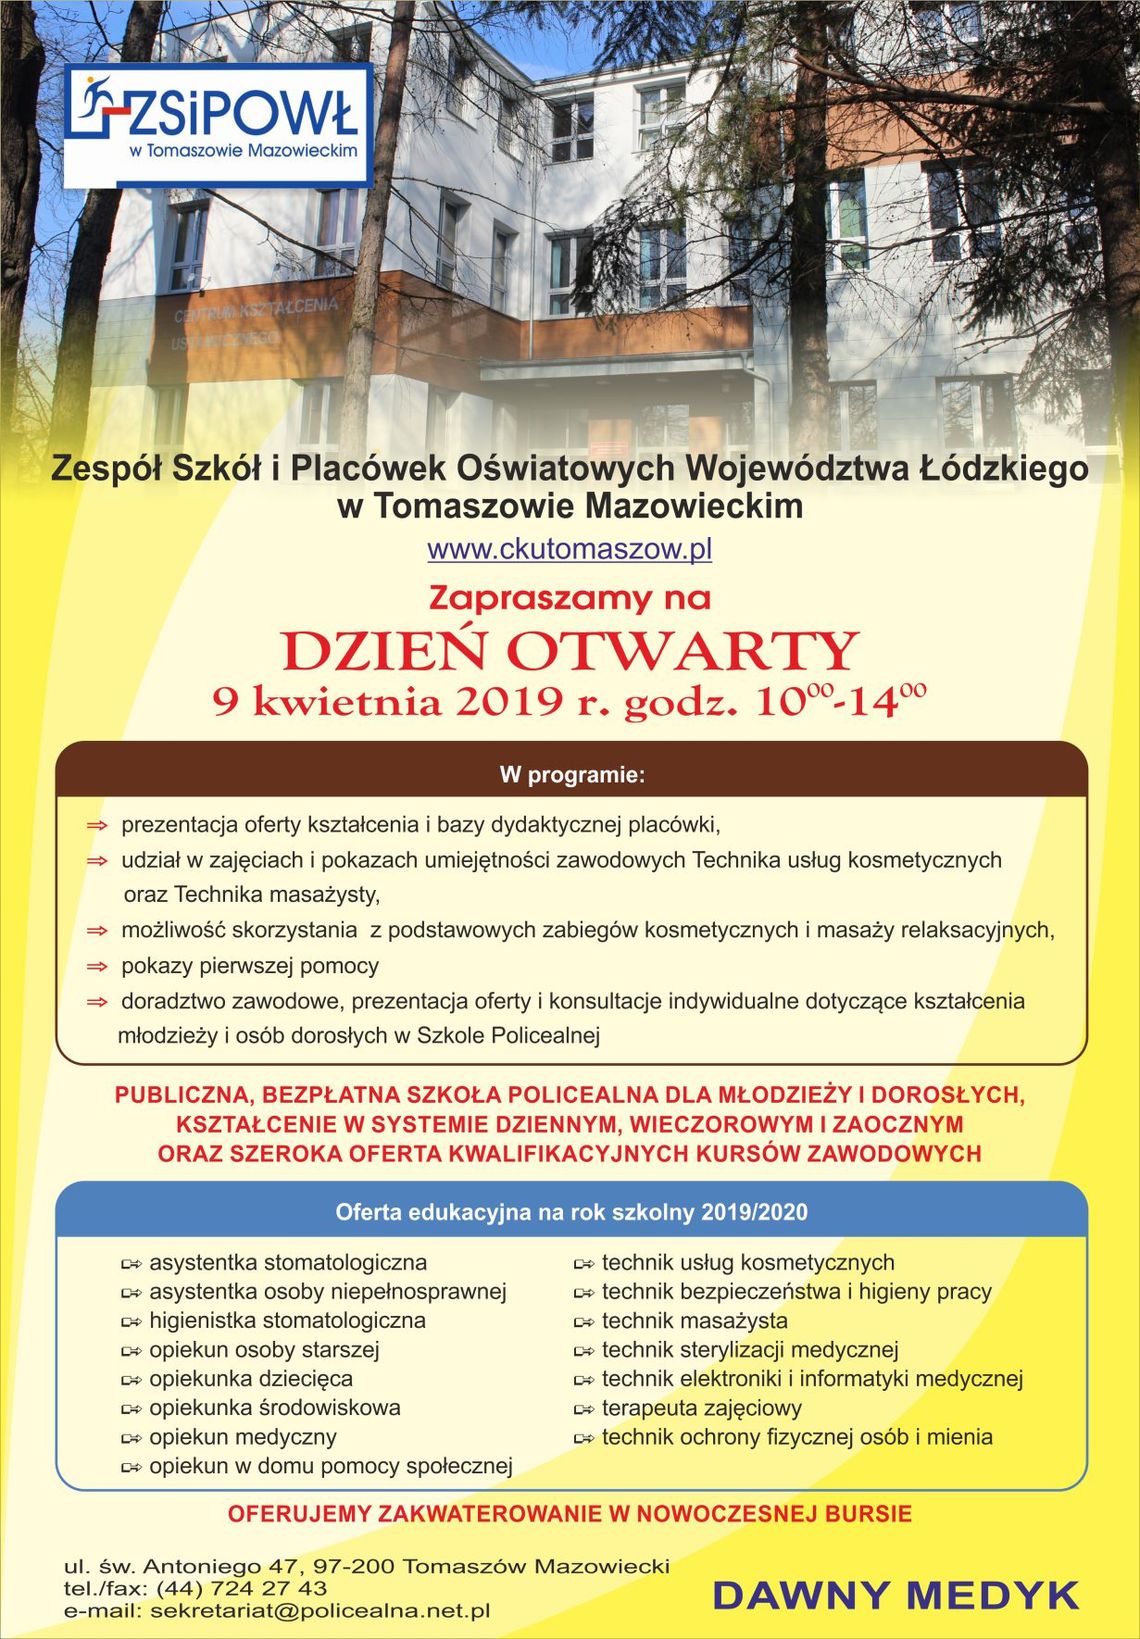 Dzień otwarty w Zespole Szkół i Placówek Oświatowych Województwa Łódzkiego w Tomaszowie Mazowieckim